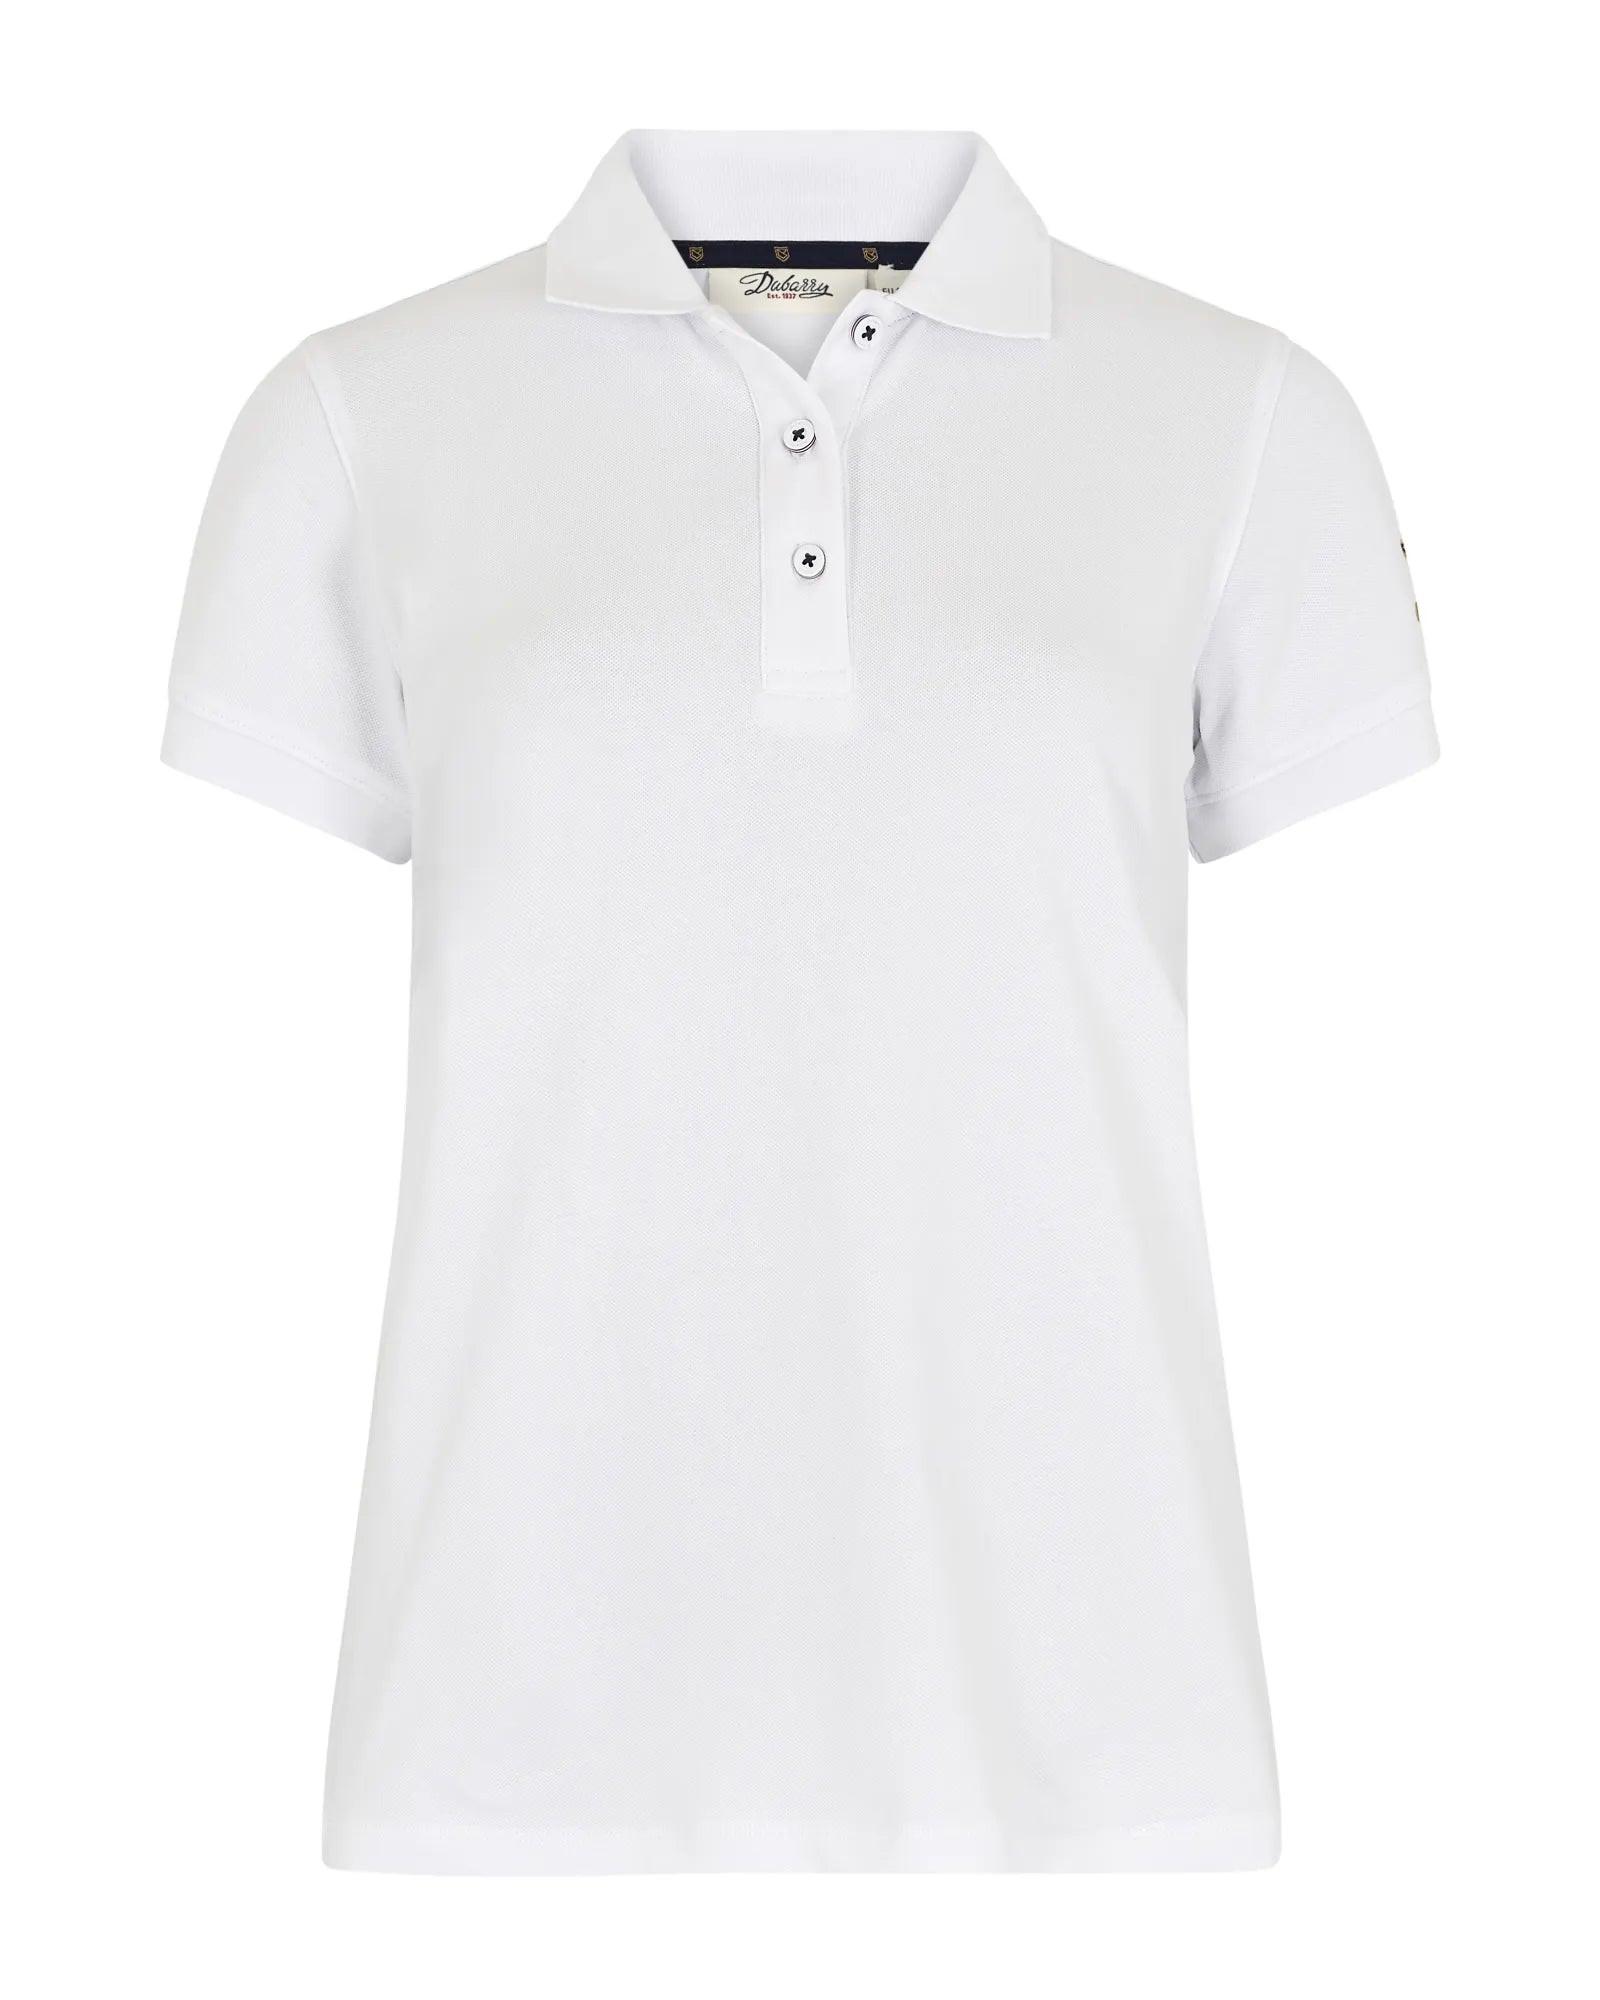 Drury Polo Shirt - White